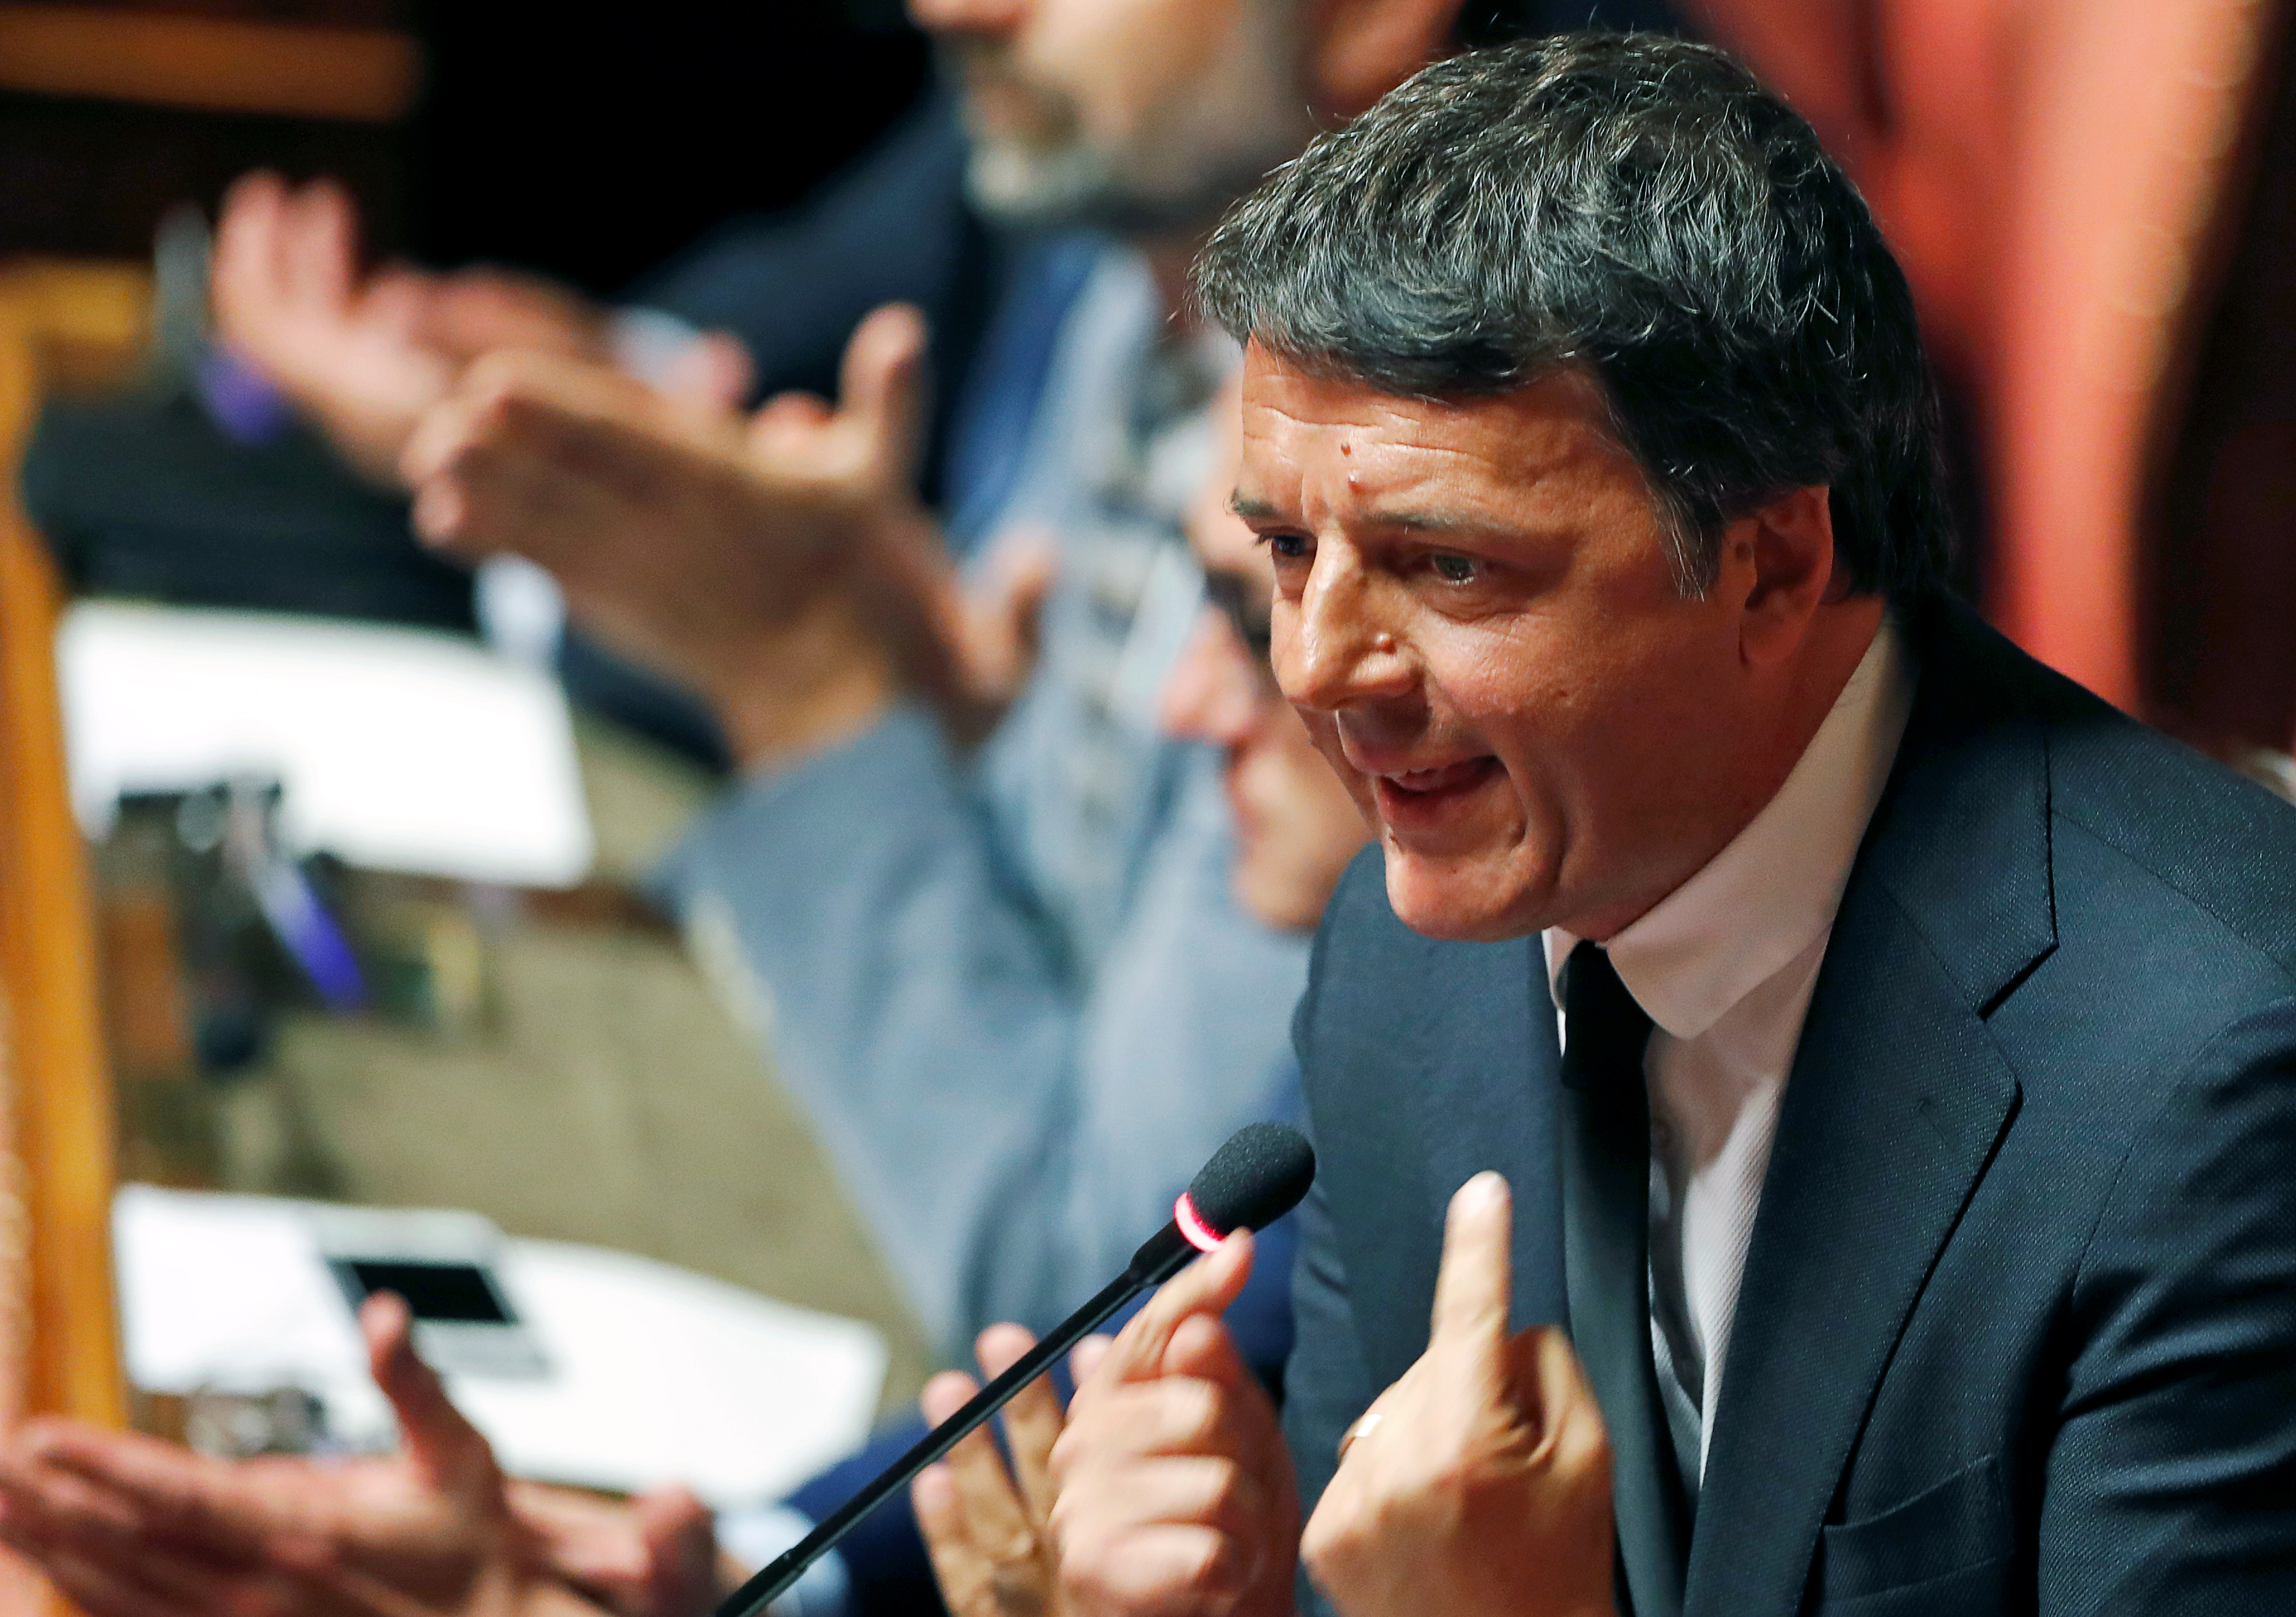 Ιταλία: Ο Ματέο Ρέντσι αποχωρεί από το κυβερνών Δημοκρατικό Κόμμα